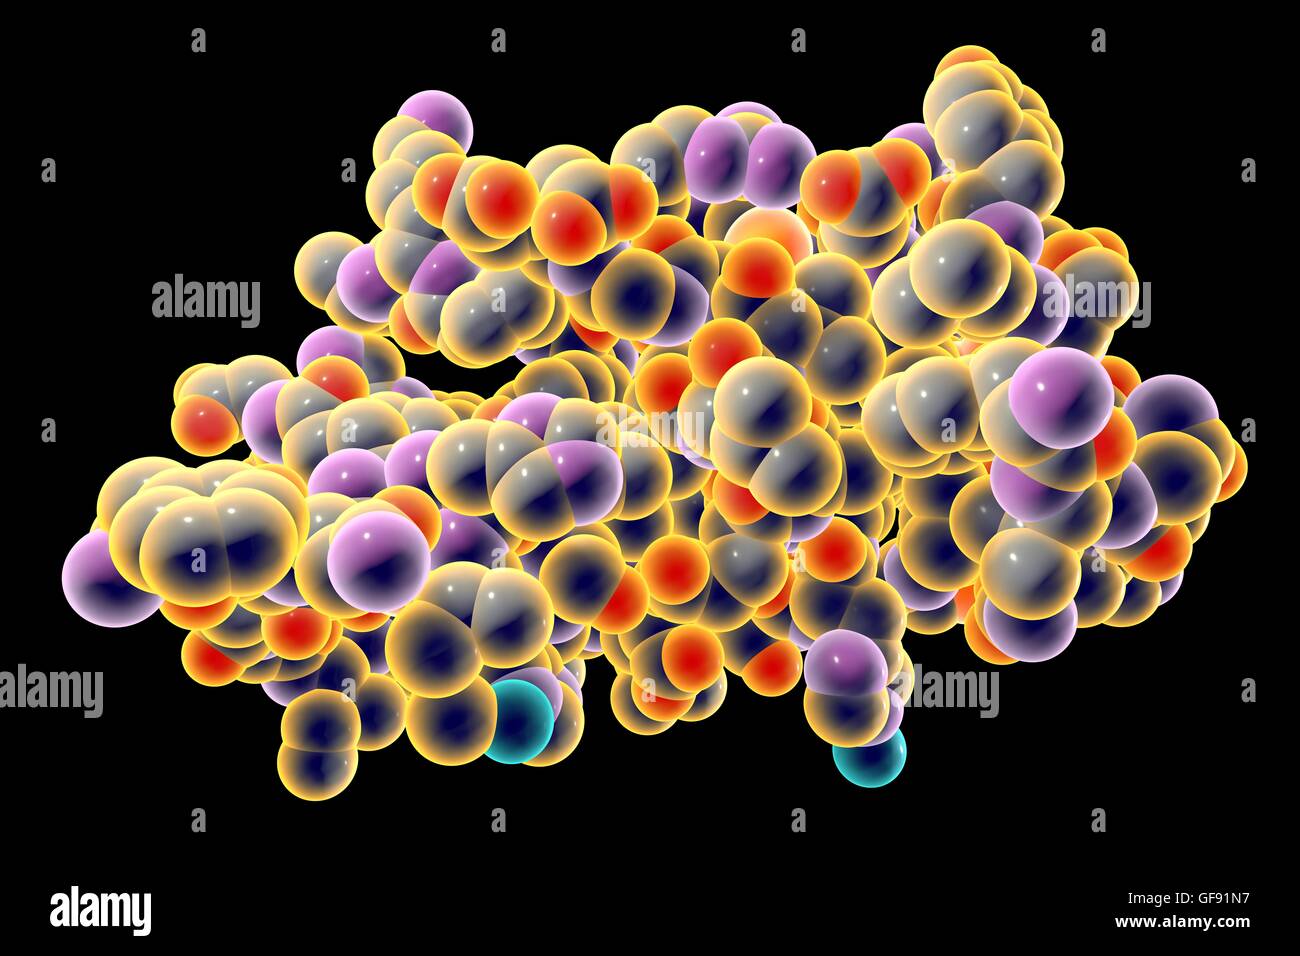 Molecola di insulina. Modello di computer che mostra la struttura di una molecola di ormone insulina. L'insulina svolge un ruolo importante nel livello di zucchero nel sangue il regolamento. L'insulina viene rilasciata dal pancreas quando i livelli di zucchero nel sangue sono elevati, per esempio dopo un pasto, promp Foto Stock